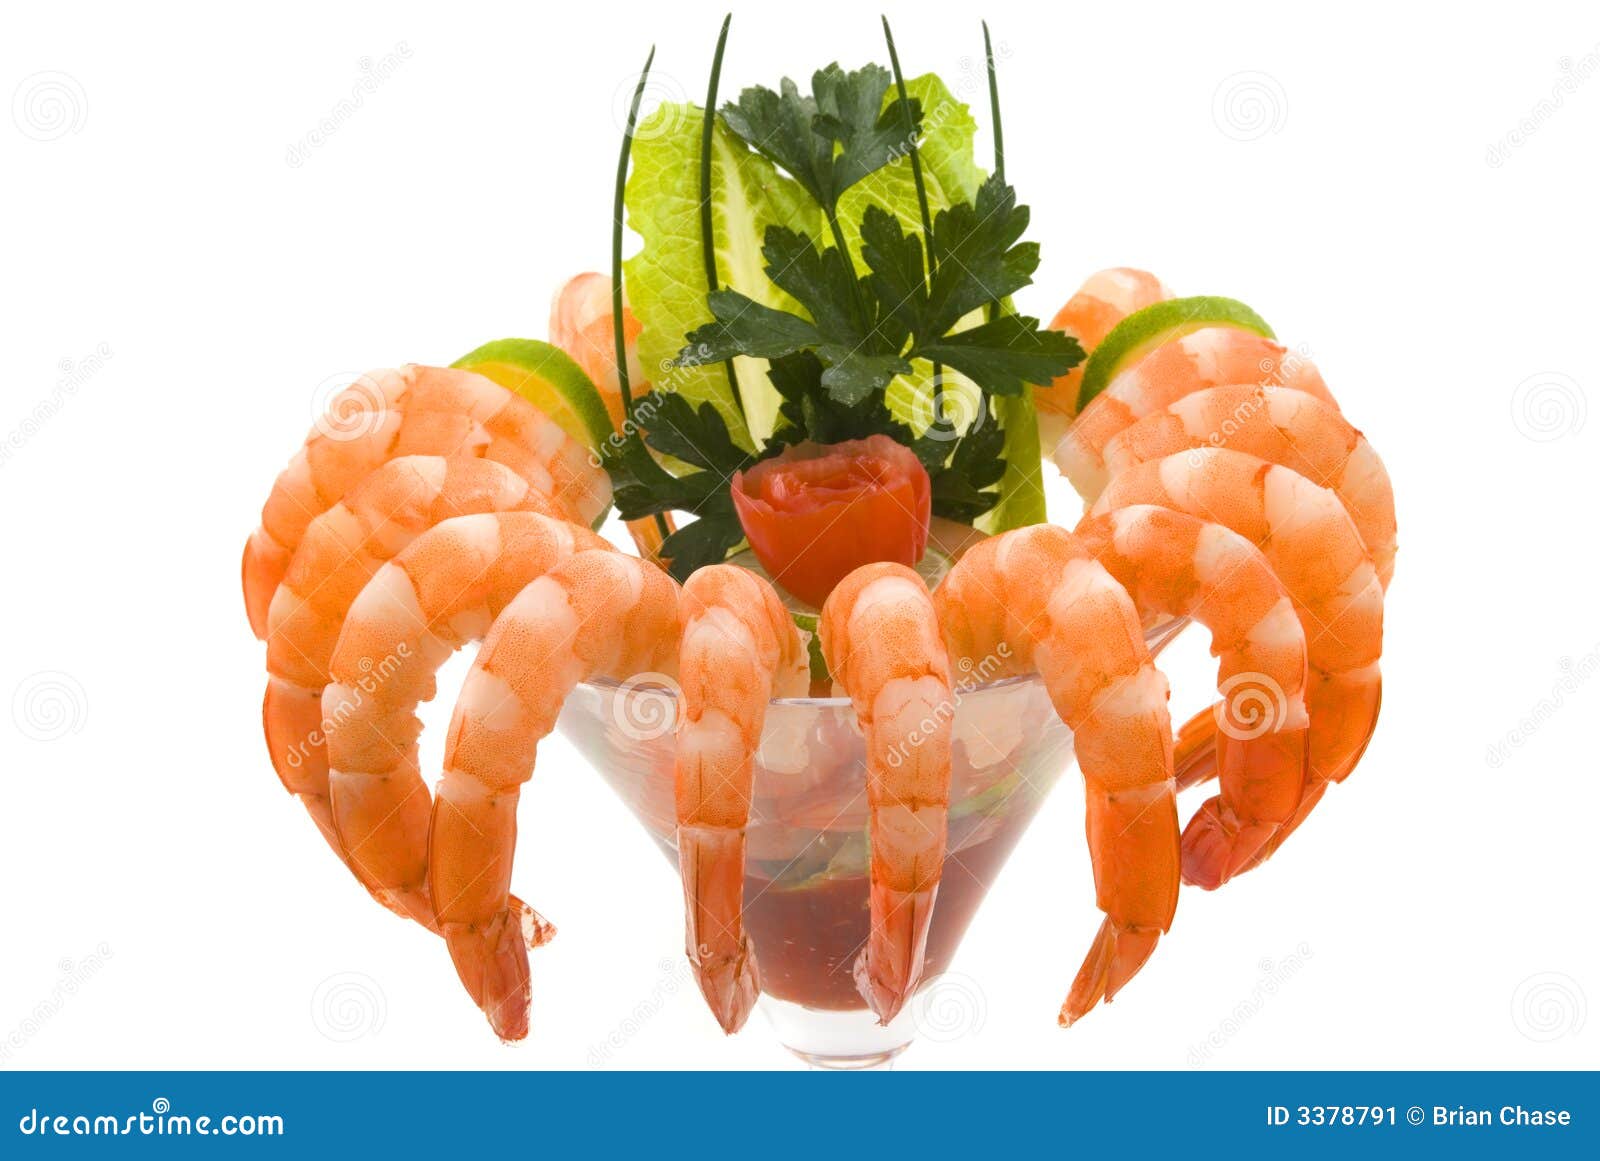 糖醋虾、大虾鸡尾酒在长的方形的盘和wo 库存图片. 图片 包括有 柠檬, 菠萝, 苹果酱, 鸡尾酒, 绿色 - 56991707